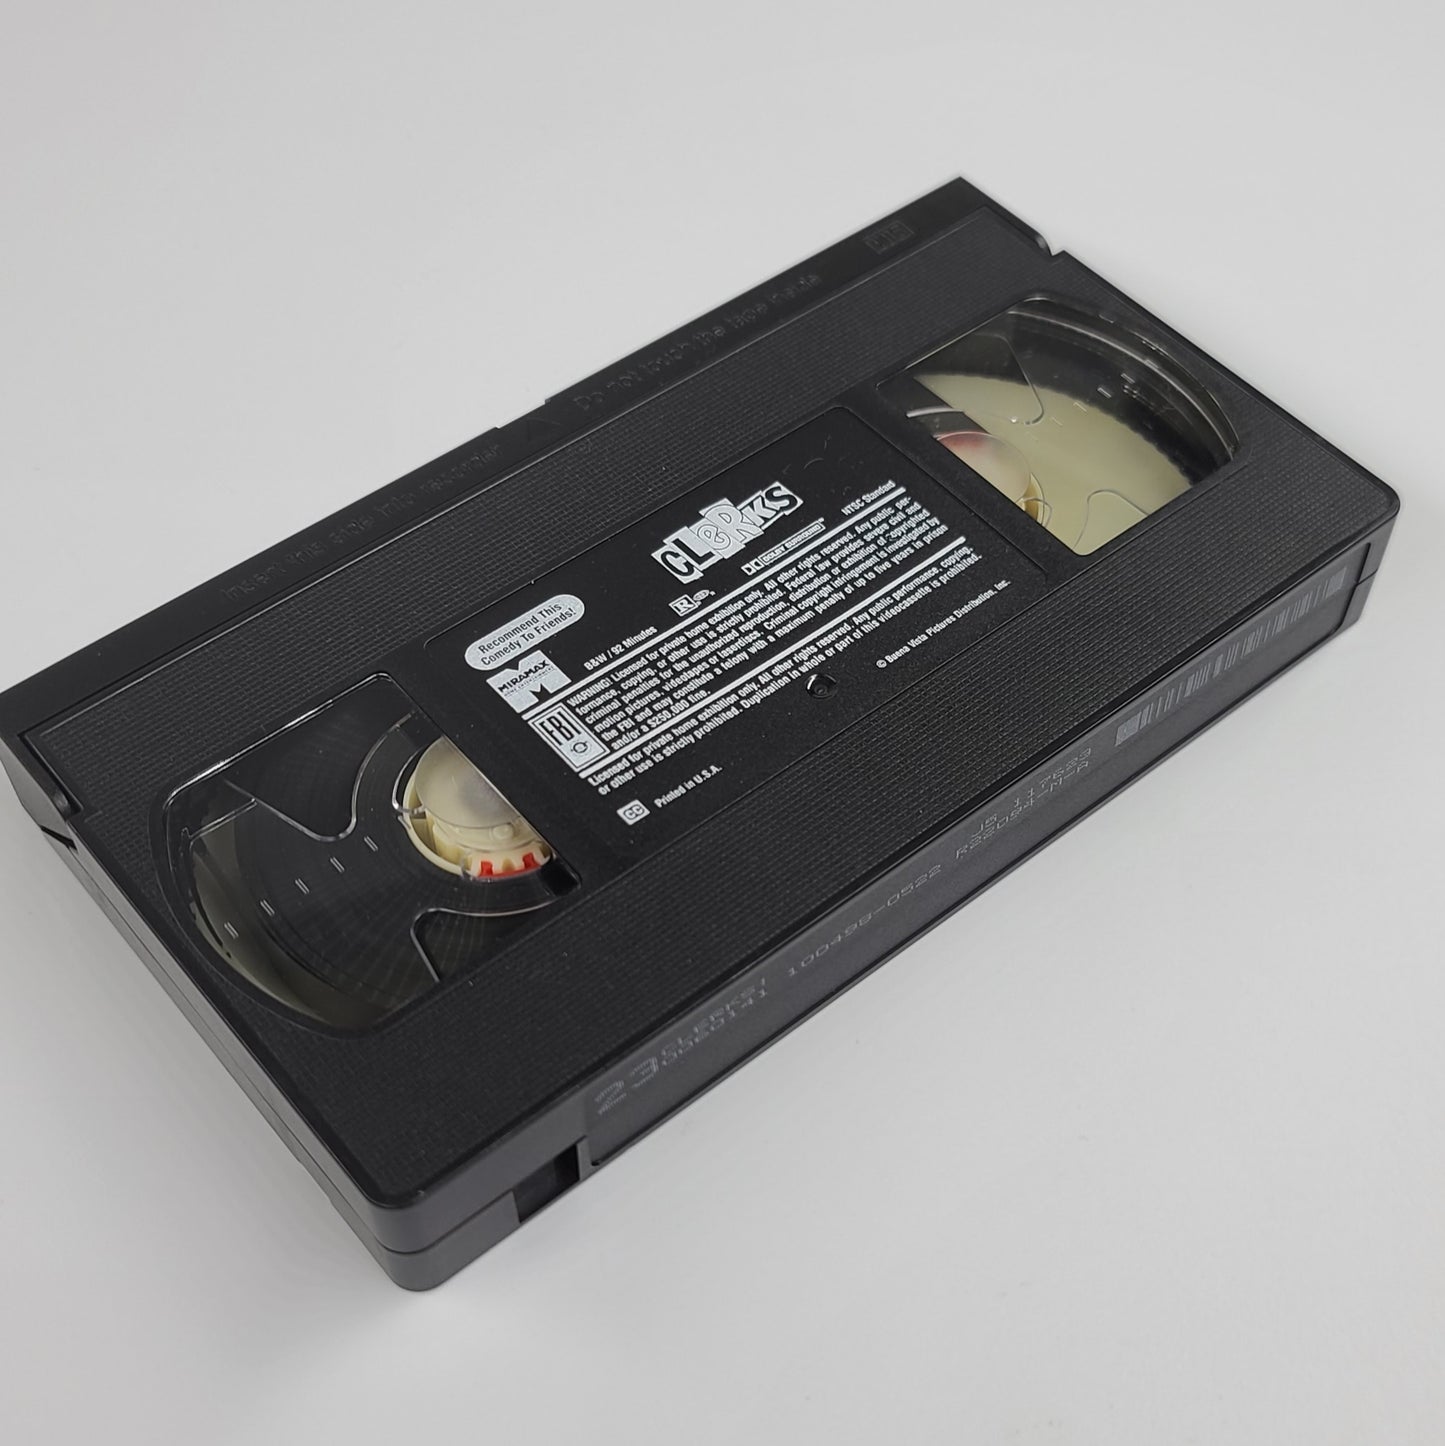 'Clerks' VHS